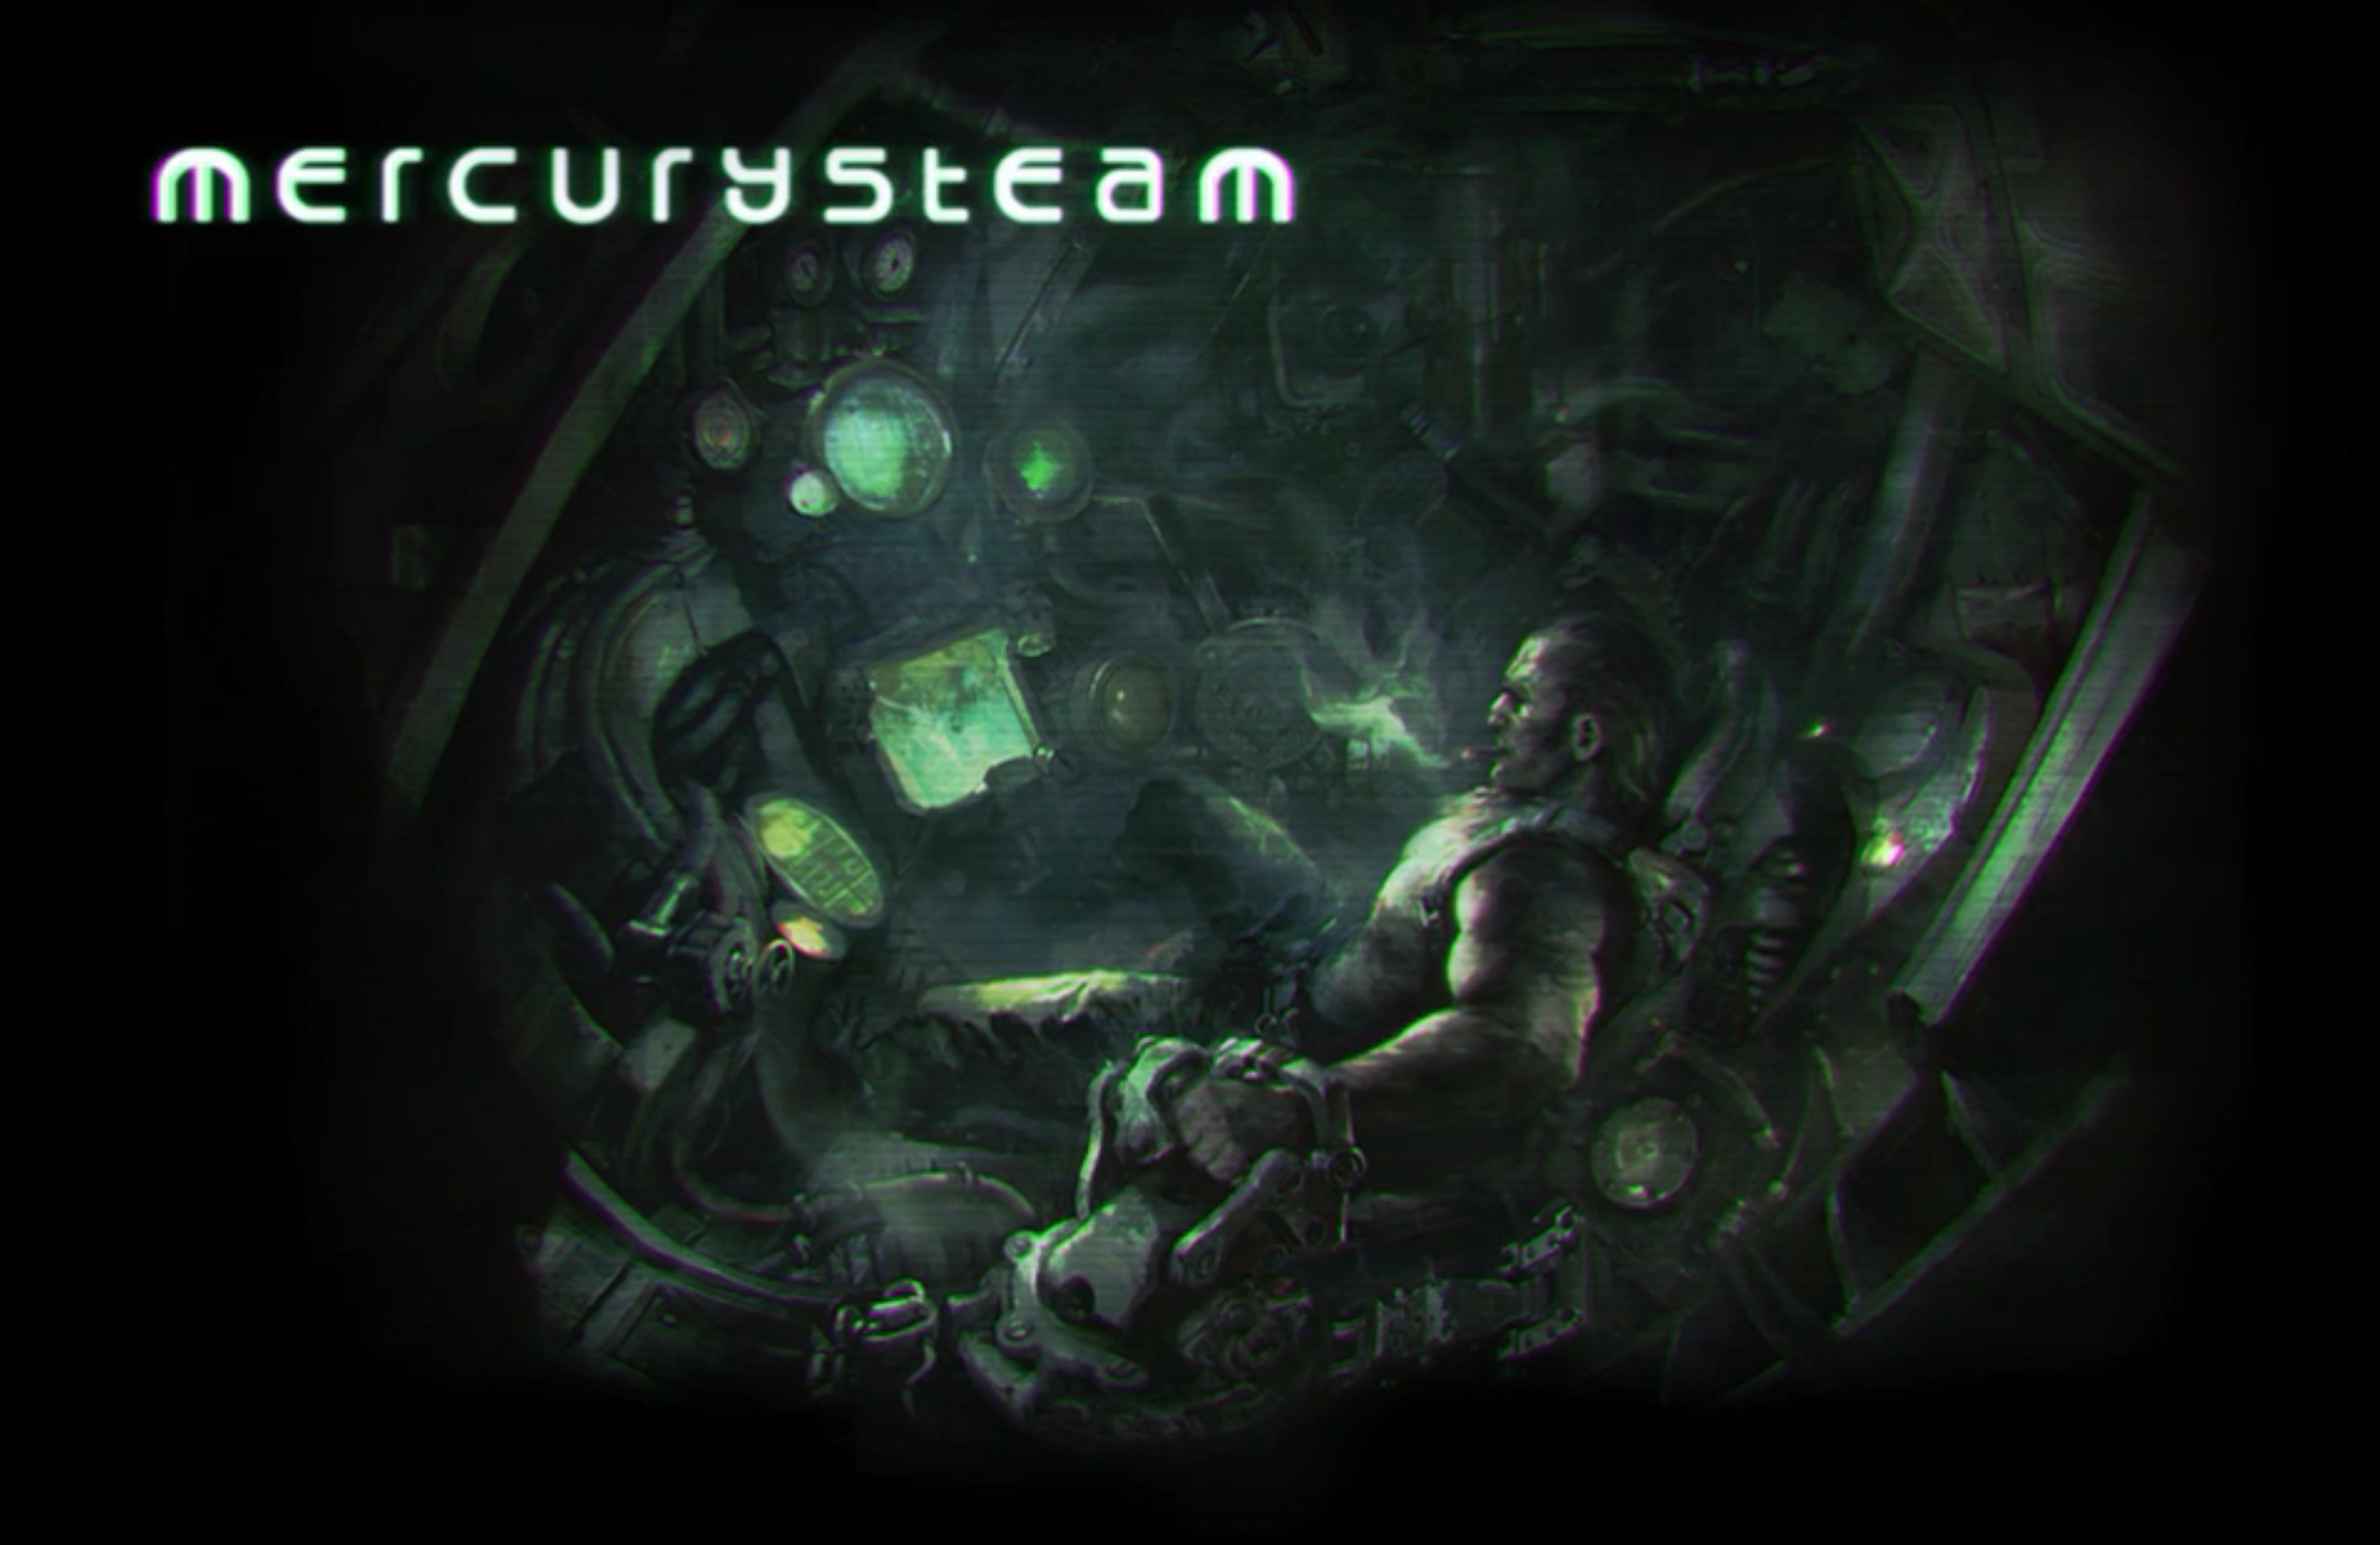 Mercury Steam desvela en su web oficial que trabaja en un nuevo proyecto